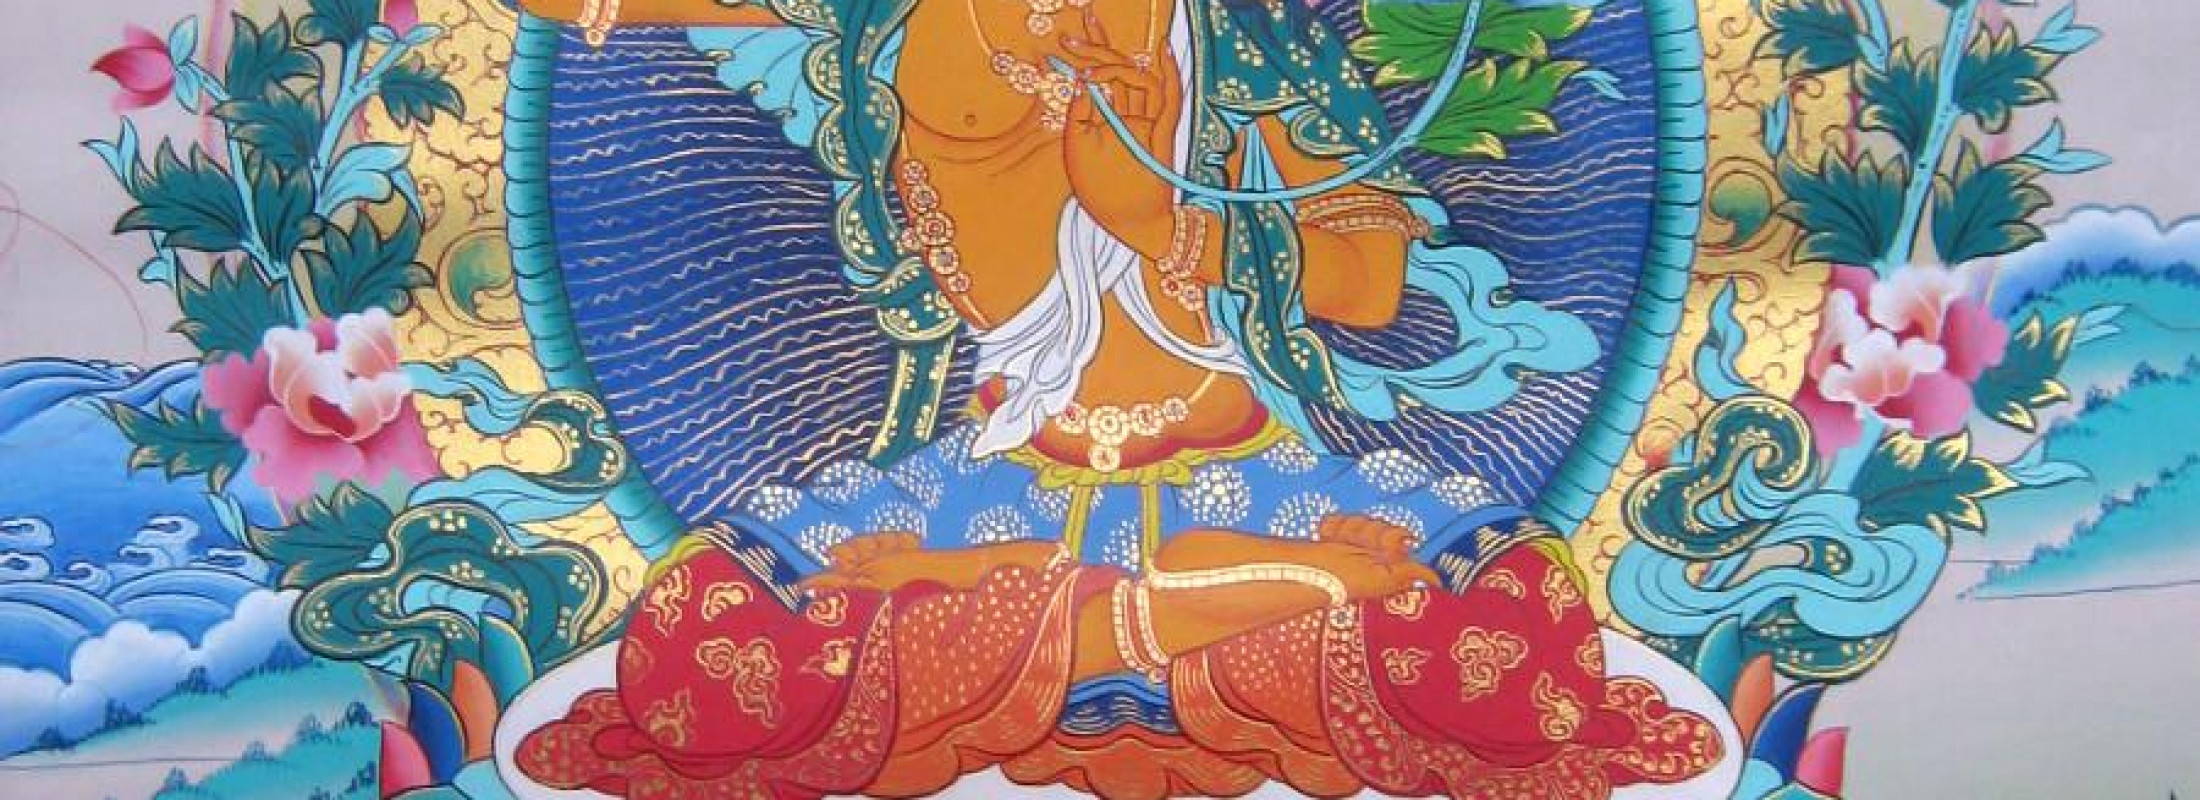 Йога йидама. Основы практики йоги божества